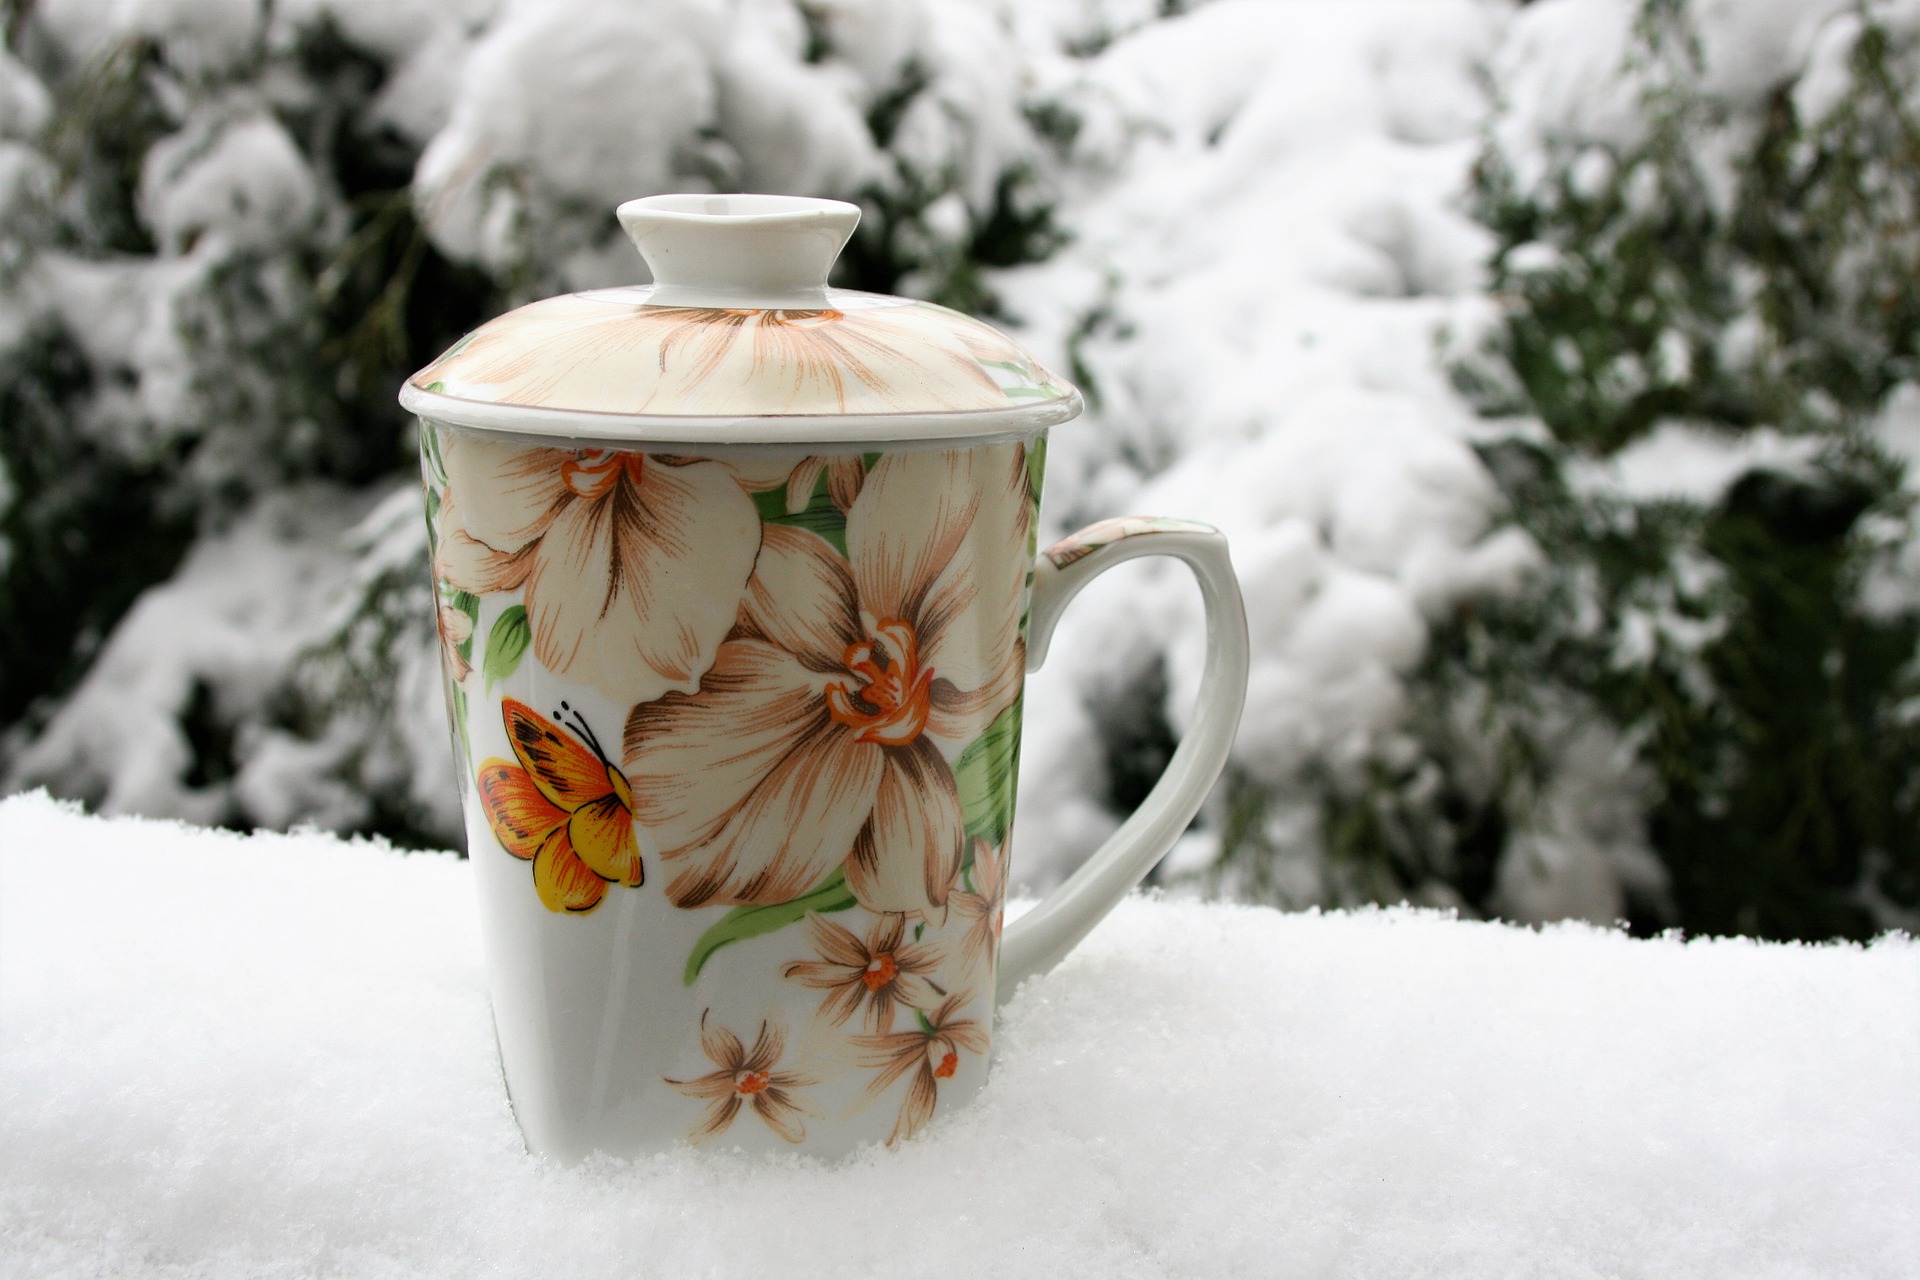 Horký čaj nebo raději grog? Vyzkoušejte si, co víte o mrazivém počasí.